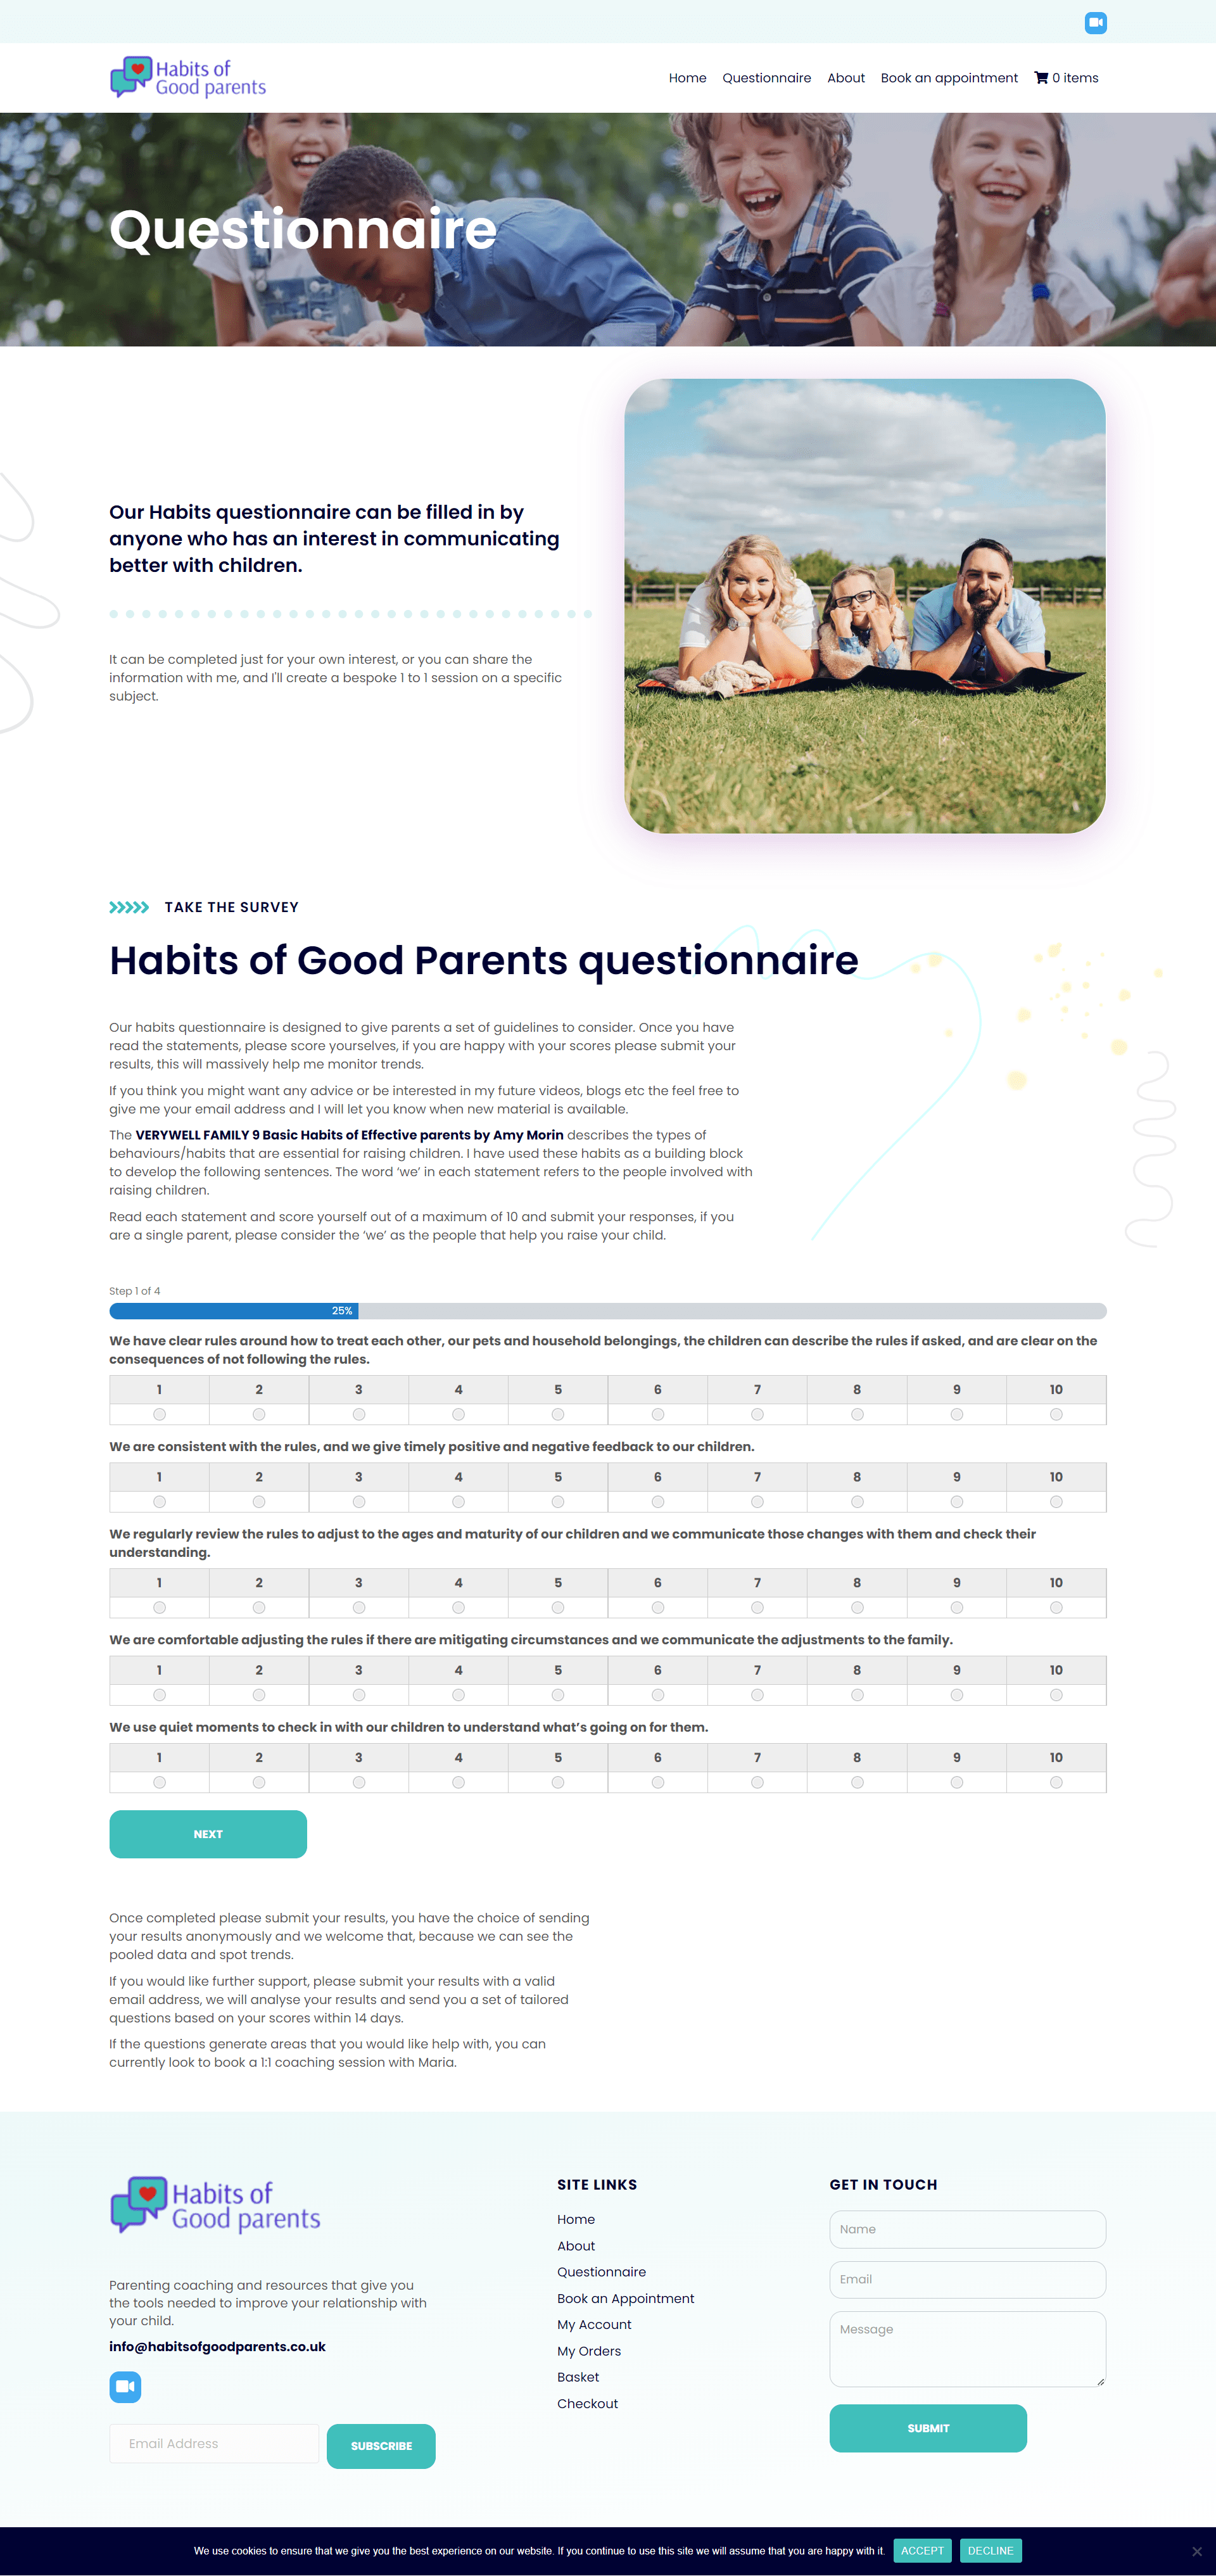 Questionnaire Habits of Good Parents